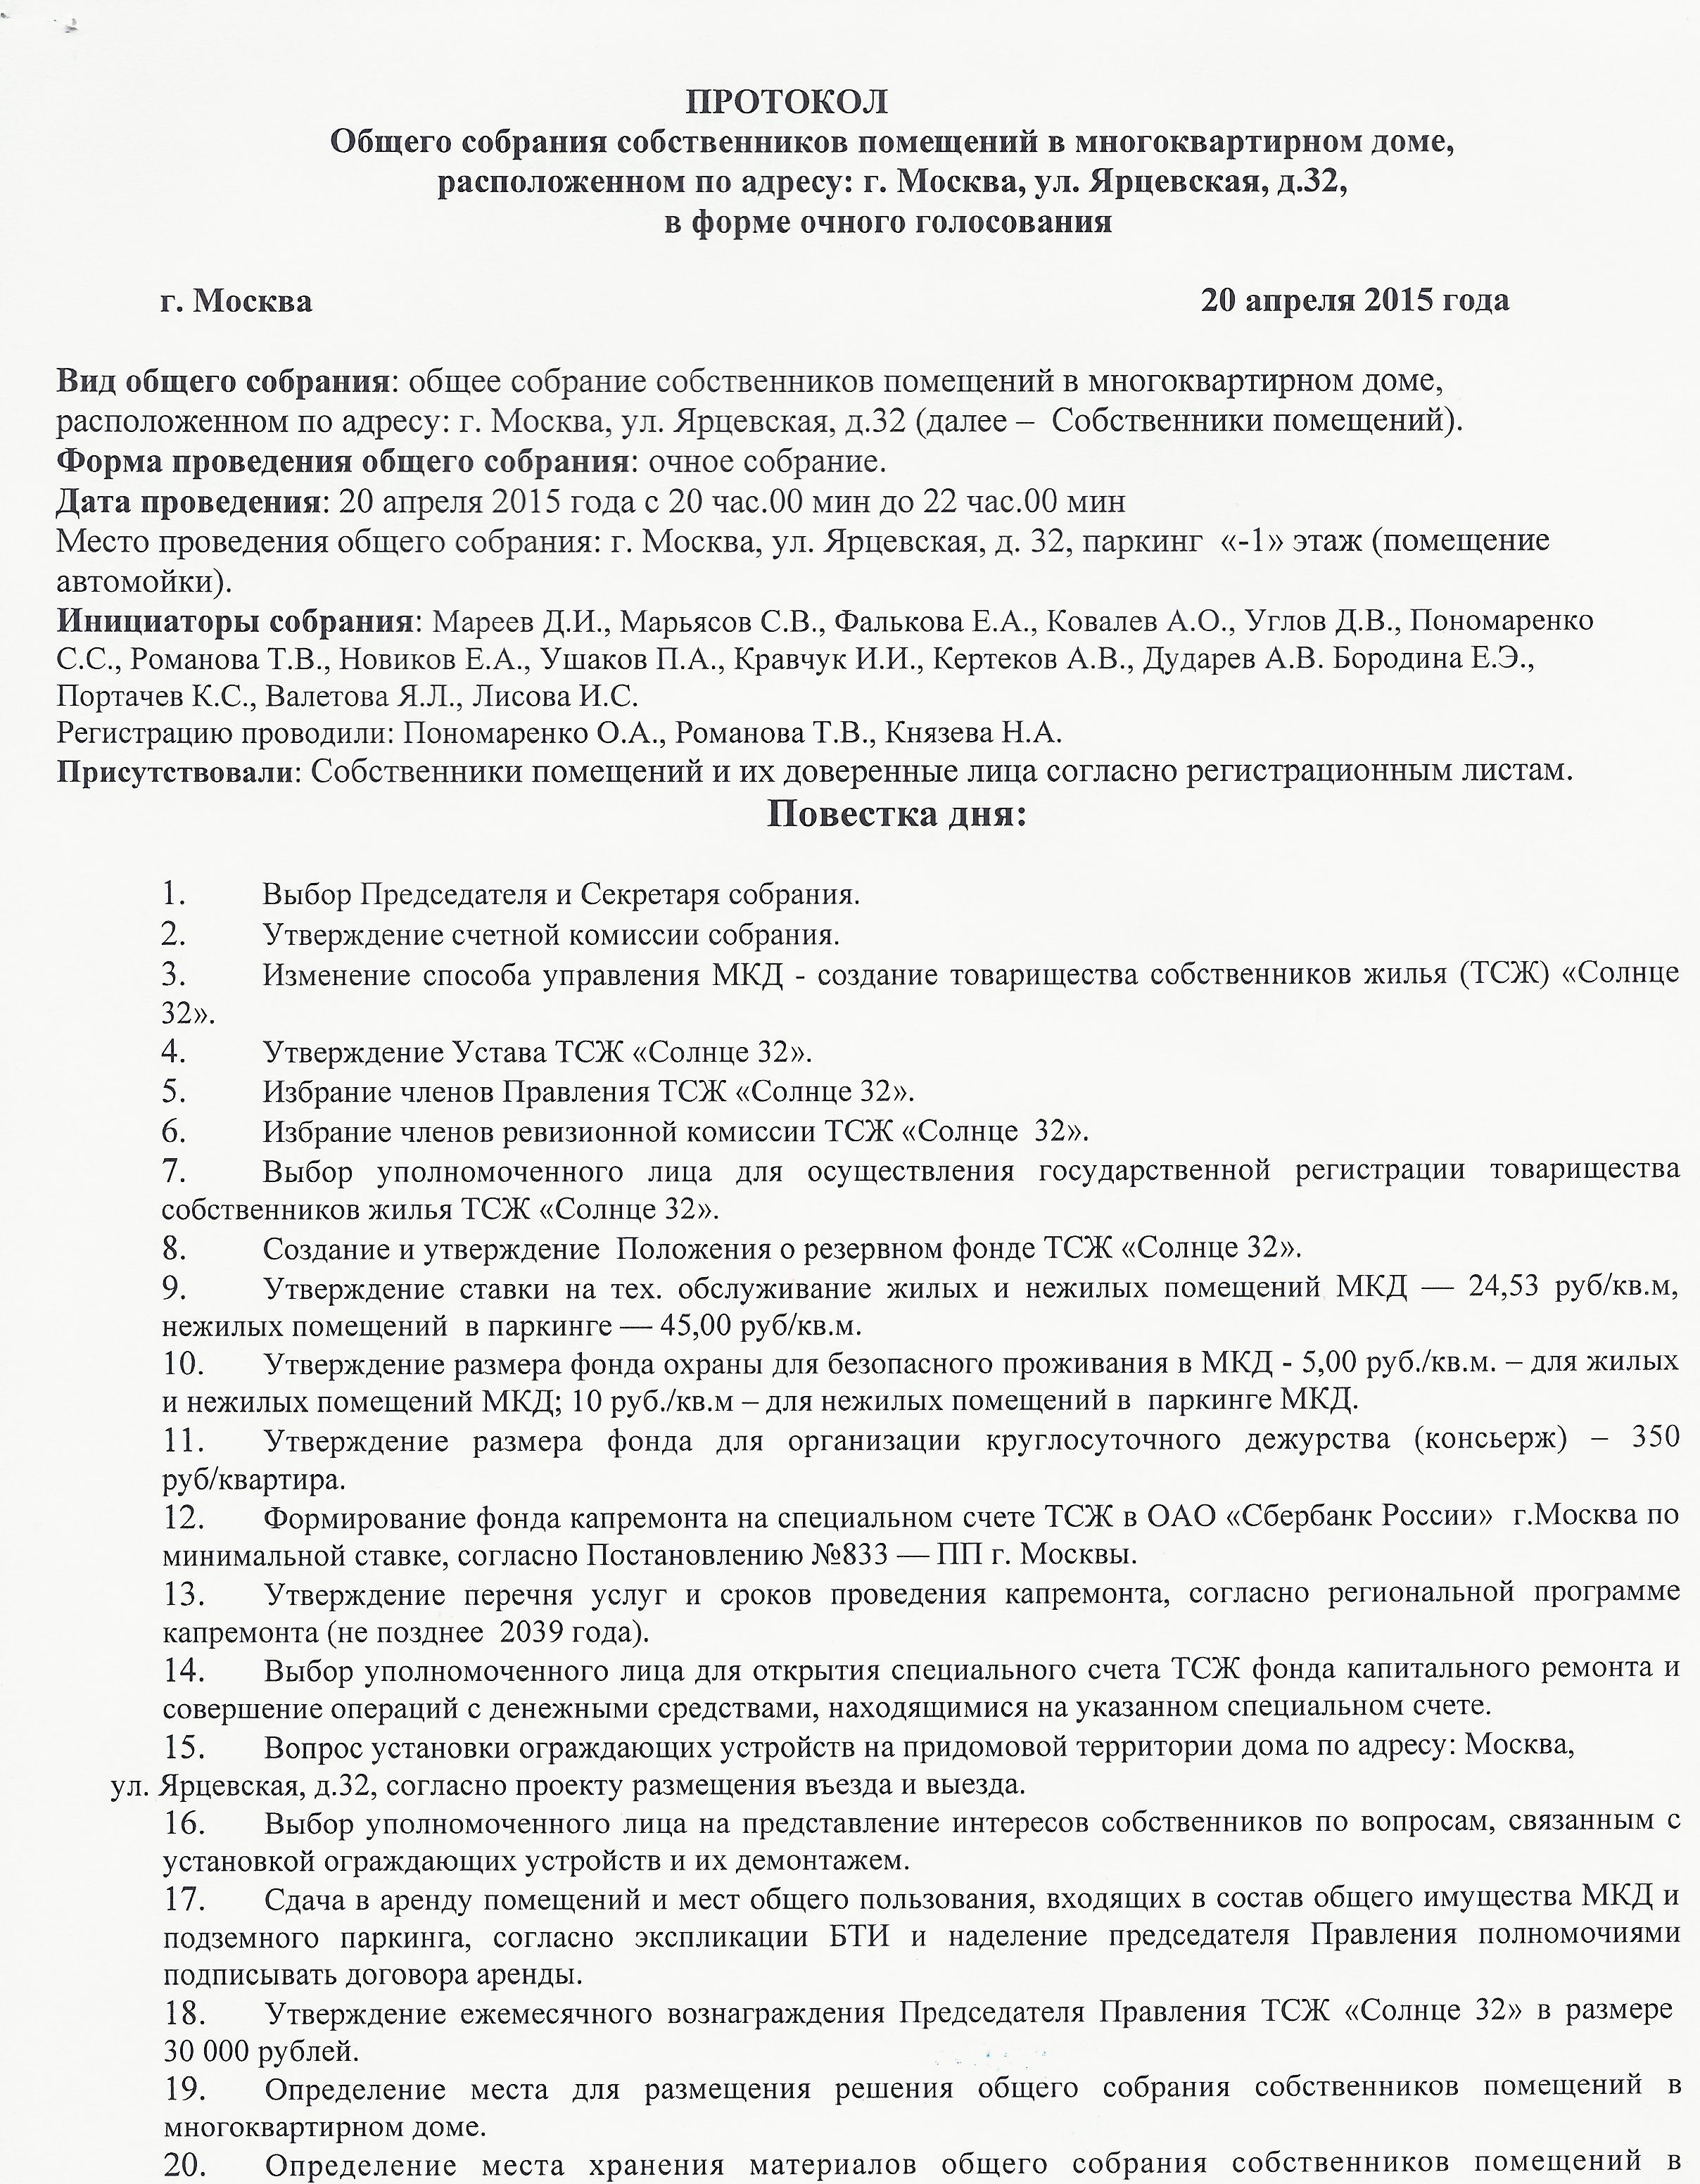 Протокол ОСС в форме очного голосования от 20.04.2015 года стр.1